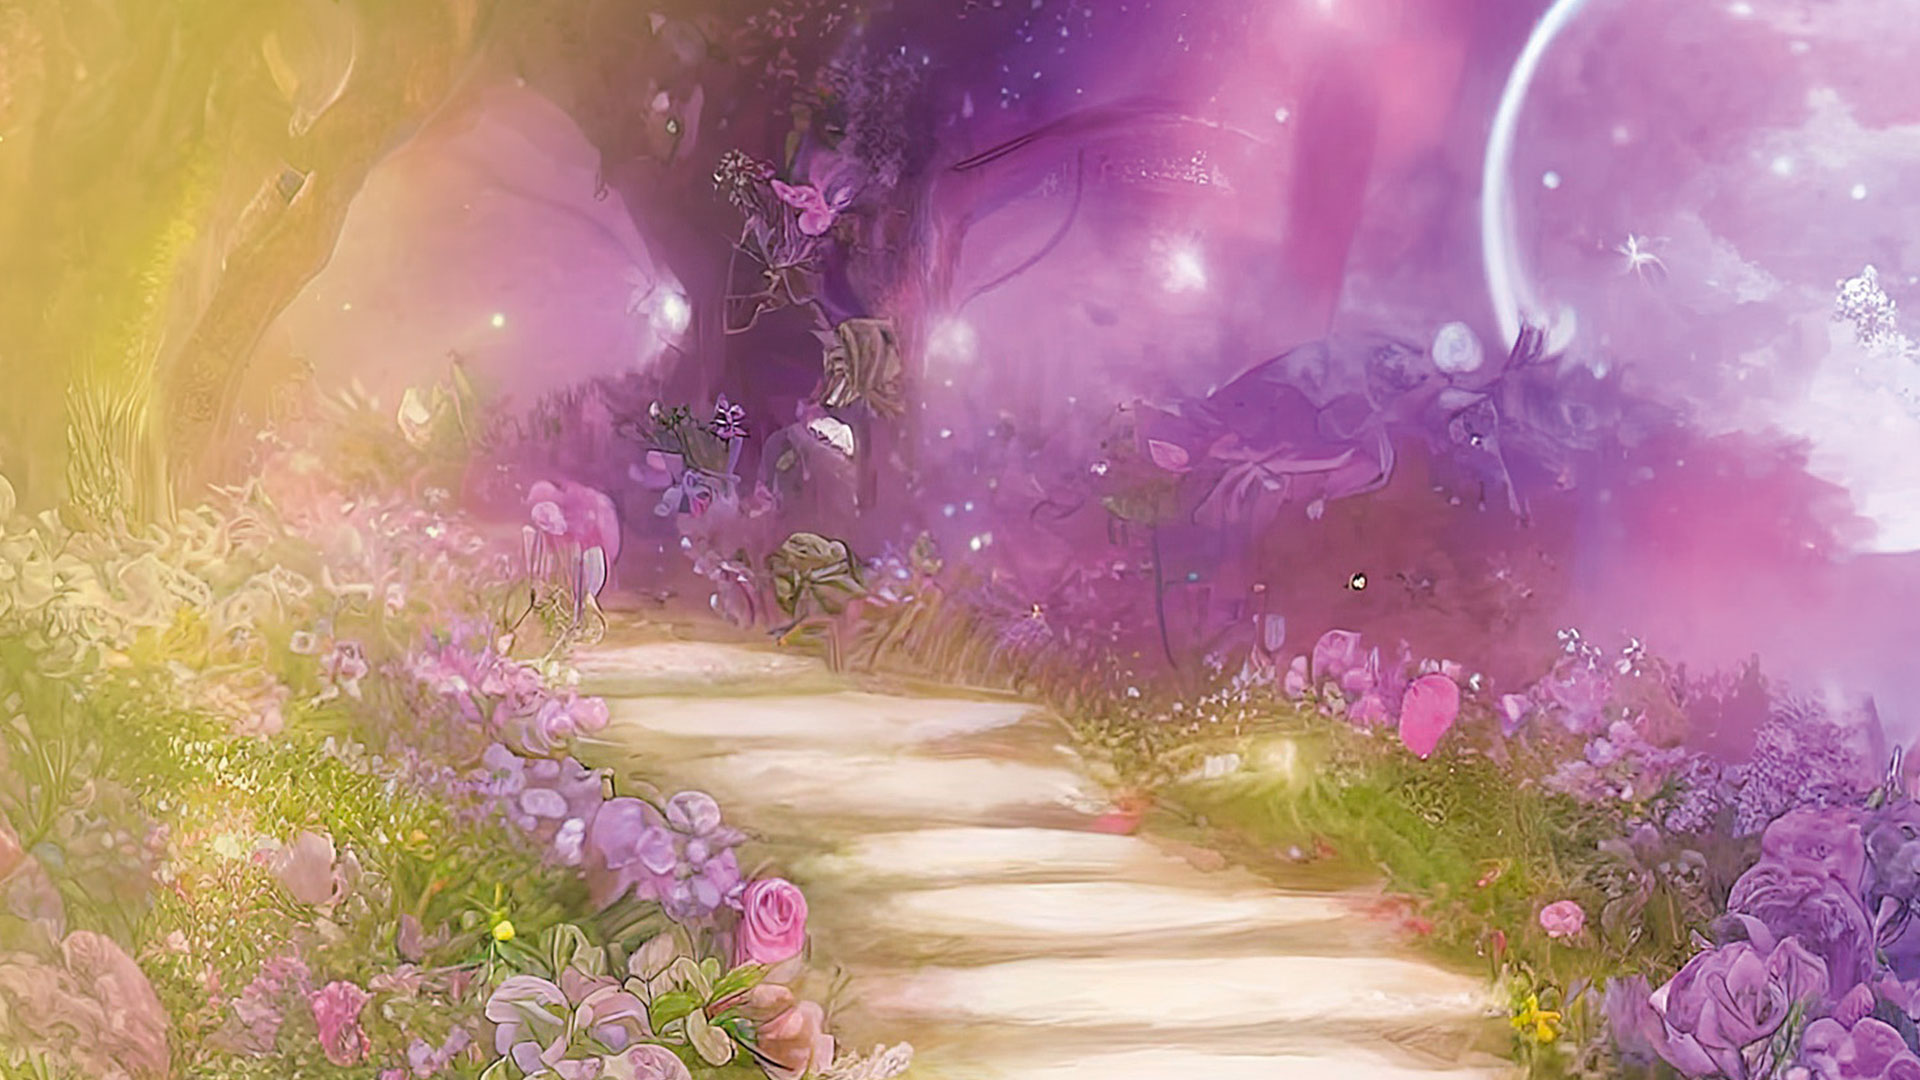 Eine mystische Fantasiewelt in pinken und lila Farbtönen: Ein Weg führt durch ein Blumenmeer zu einer Pforte aus Bäumen, im Hintergrund der Vollmond.